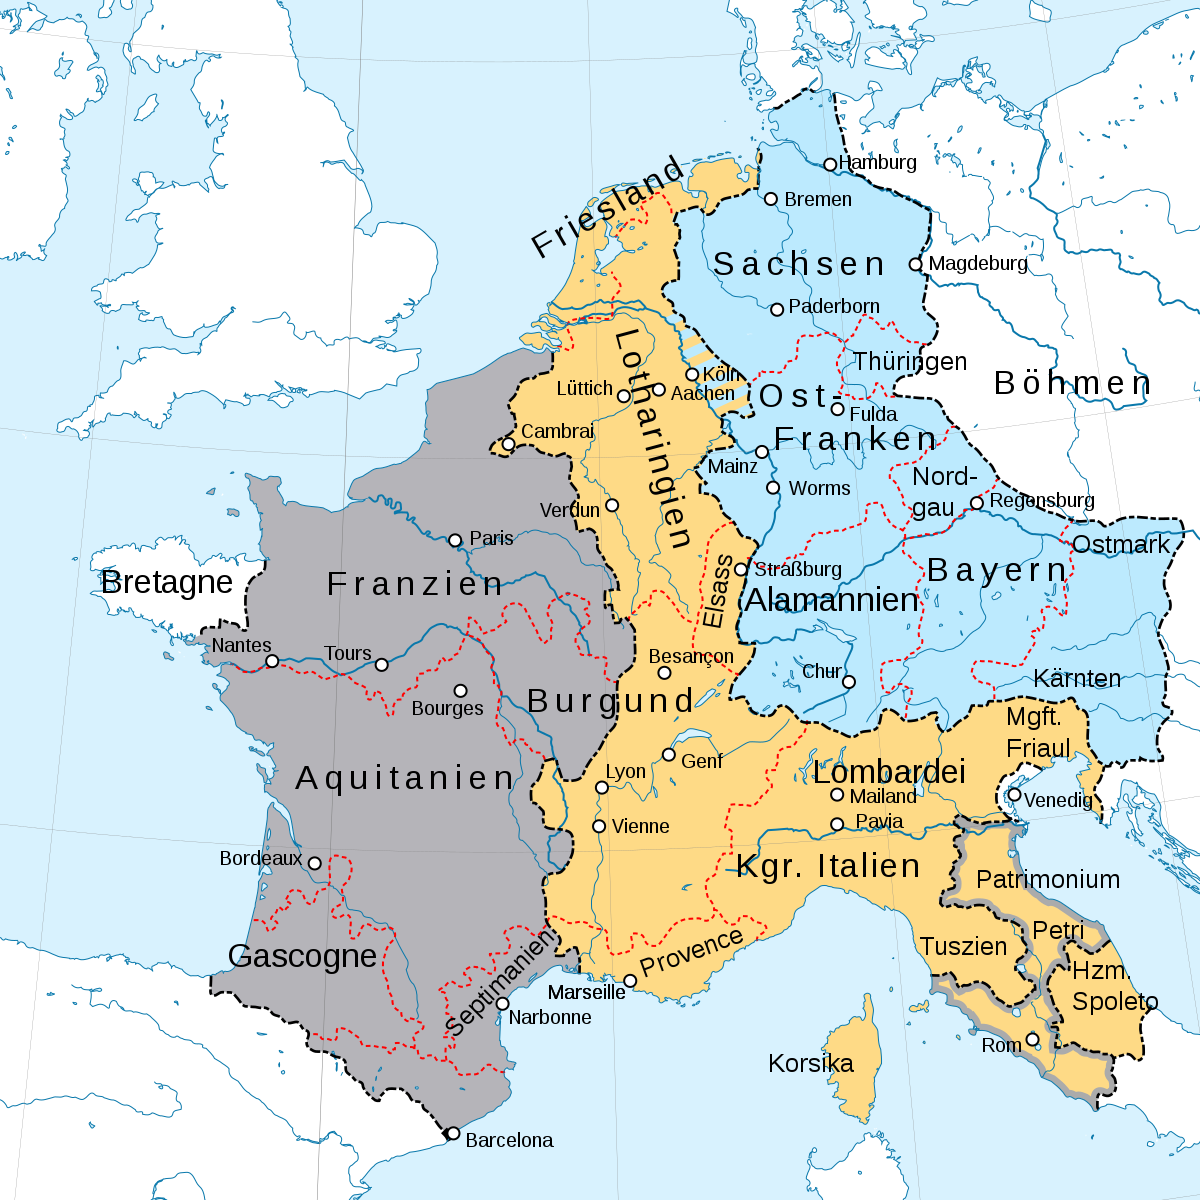 https://en.wikipedia.org/wiki/Treaty_of_Verdun